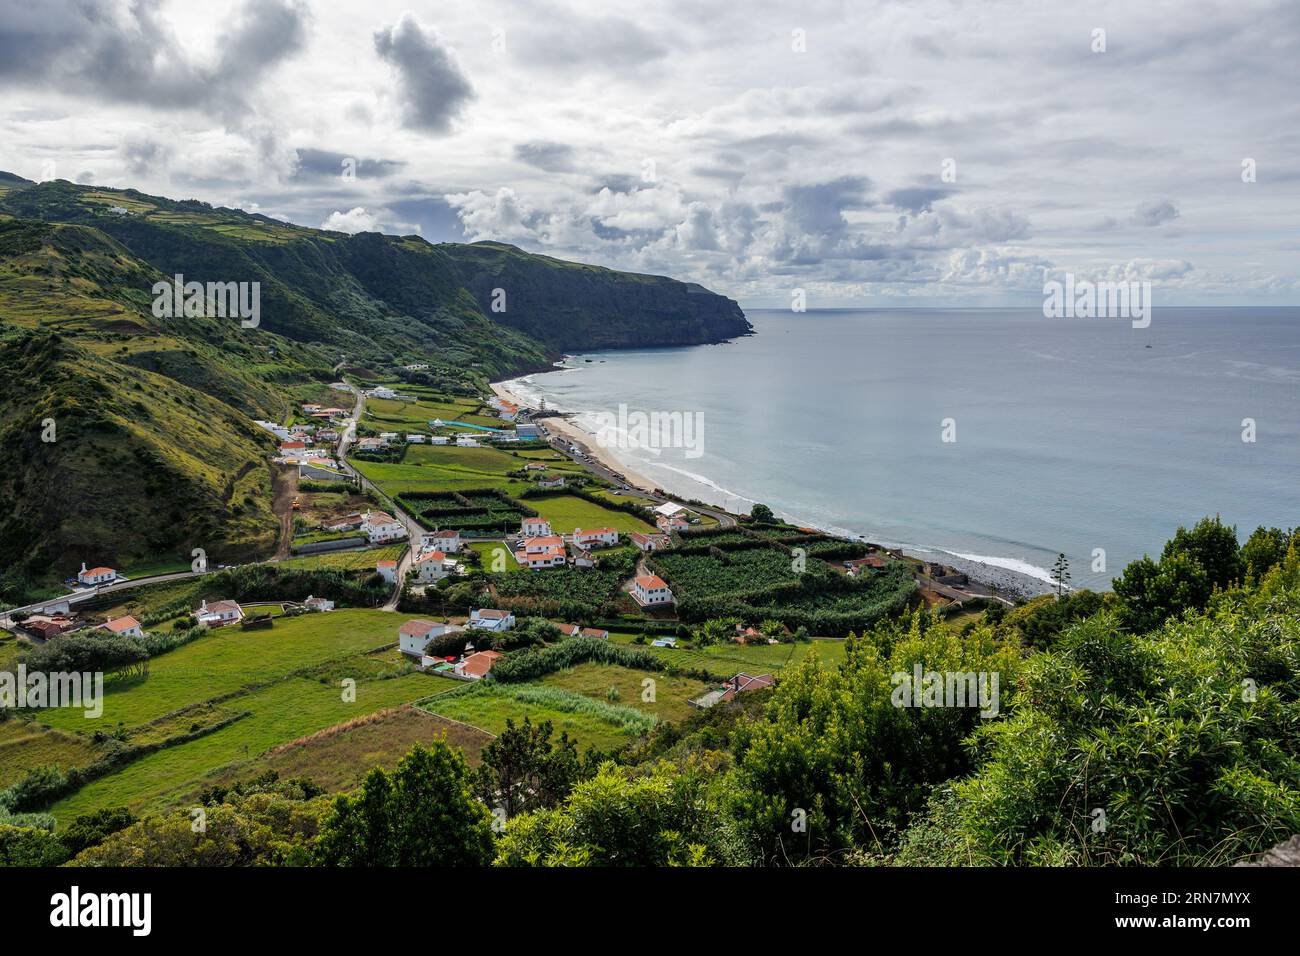 Aussichtspunkt auf Santa Maria Insel, Meer und Berge, Reise Azoren Inseln, Portugal. Stockfoto